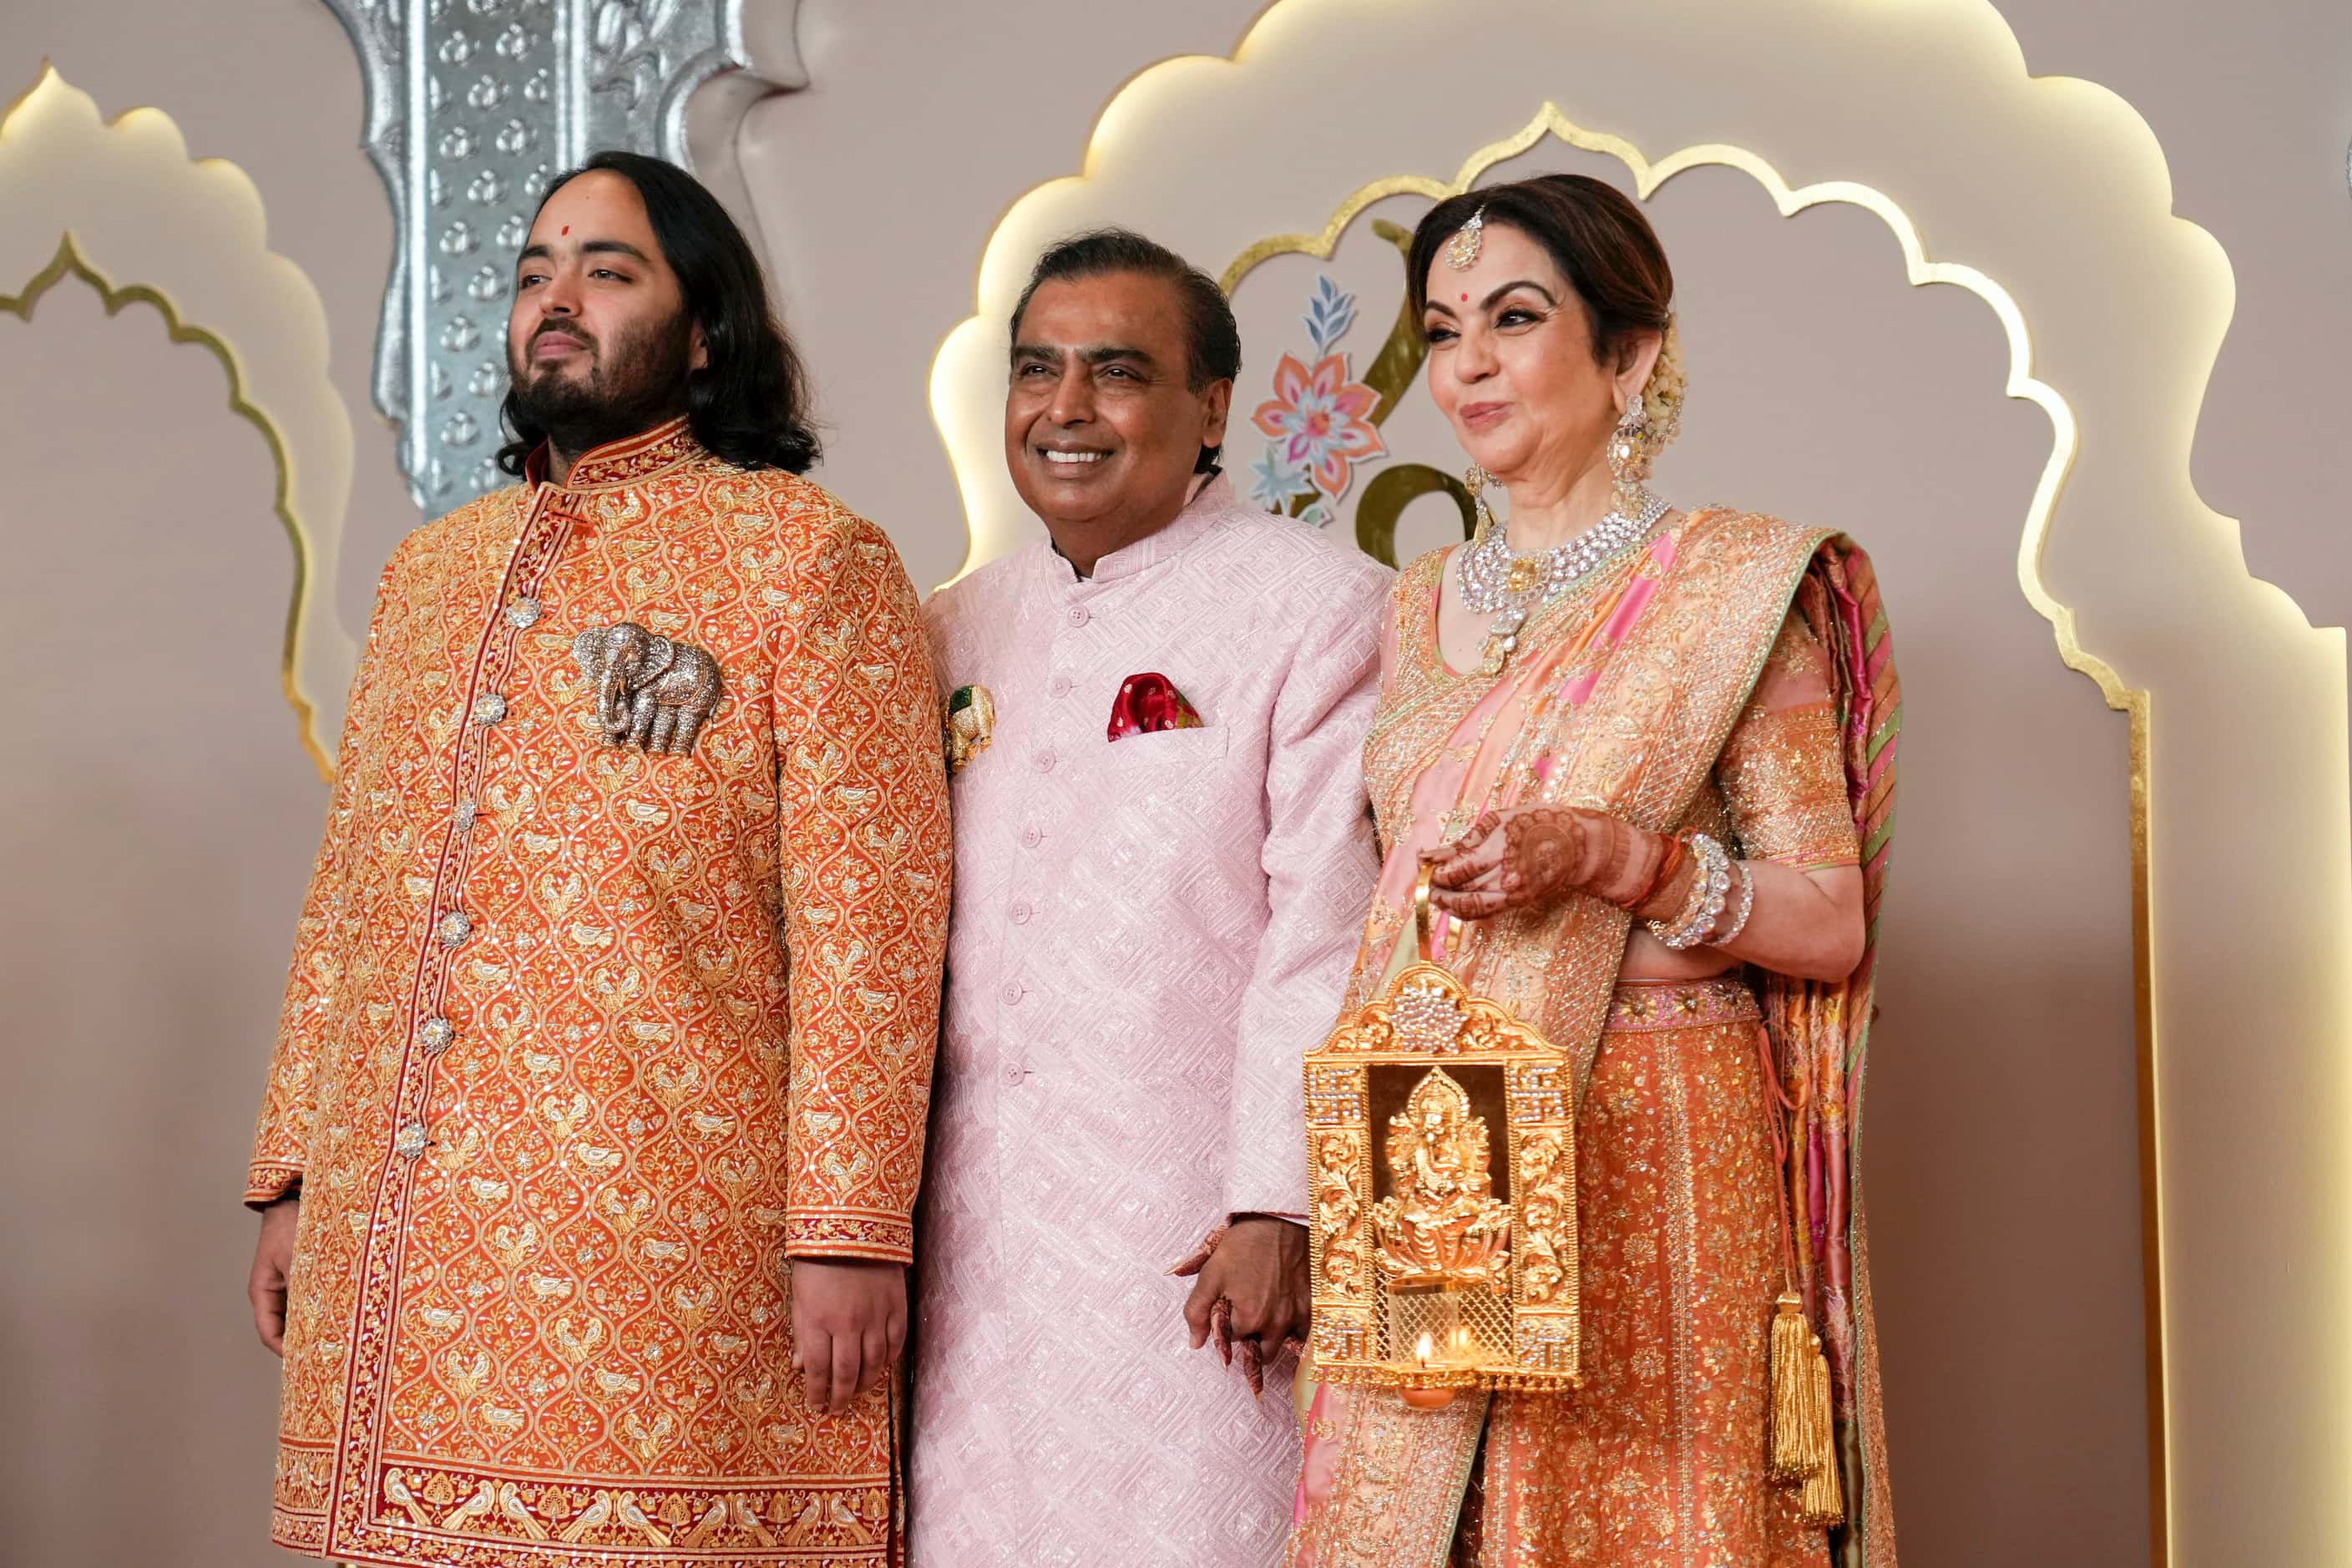 Billionaire Mukesh Ambani, center, with son Anant, and wife Nita 